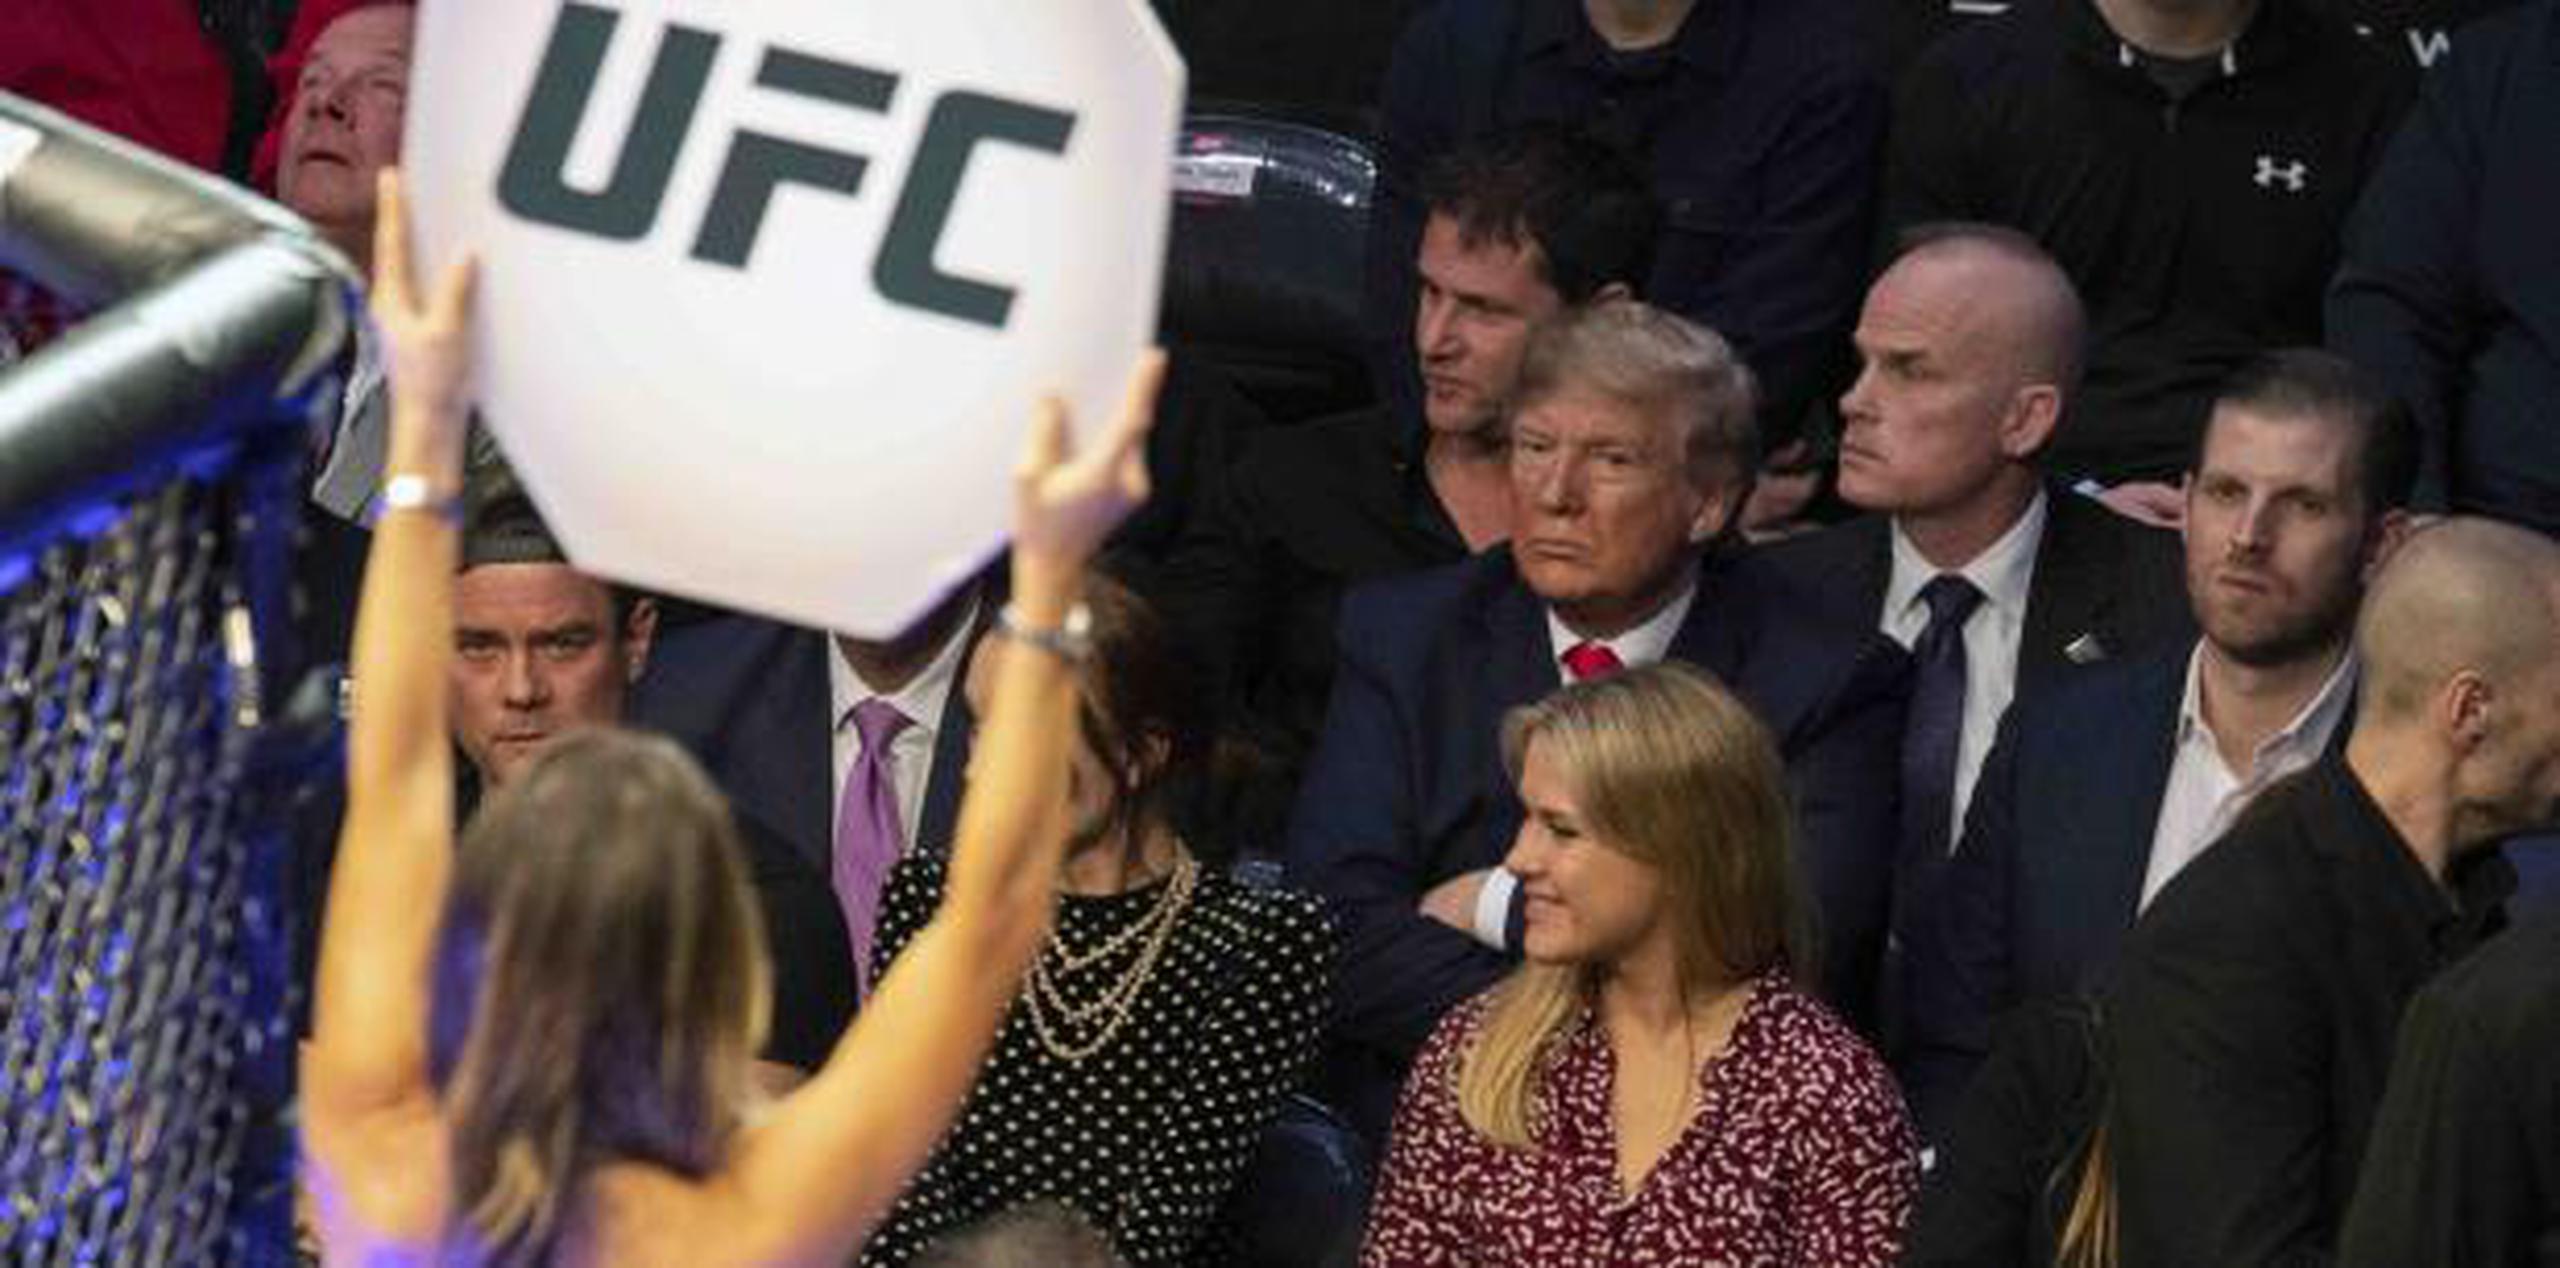 Trump se puso de pie para aplaudir el final de la pelea estelar, aun cuando muchos de los 20,000 espectadores abuchearon por la rápida conclusión de la contienda. (AP)